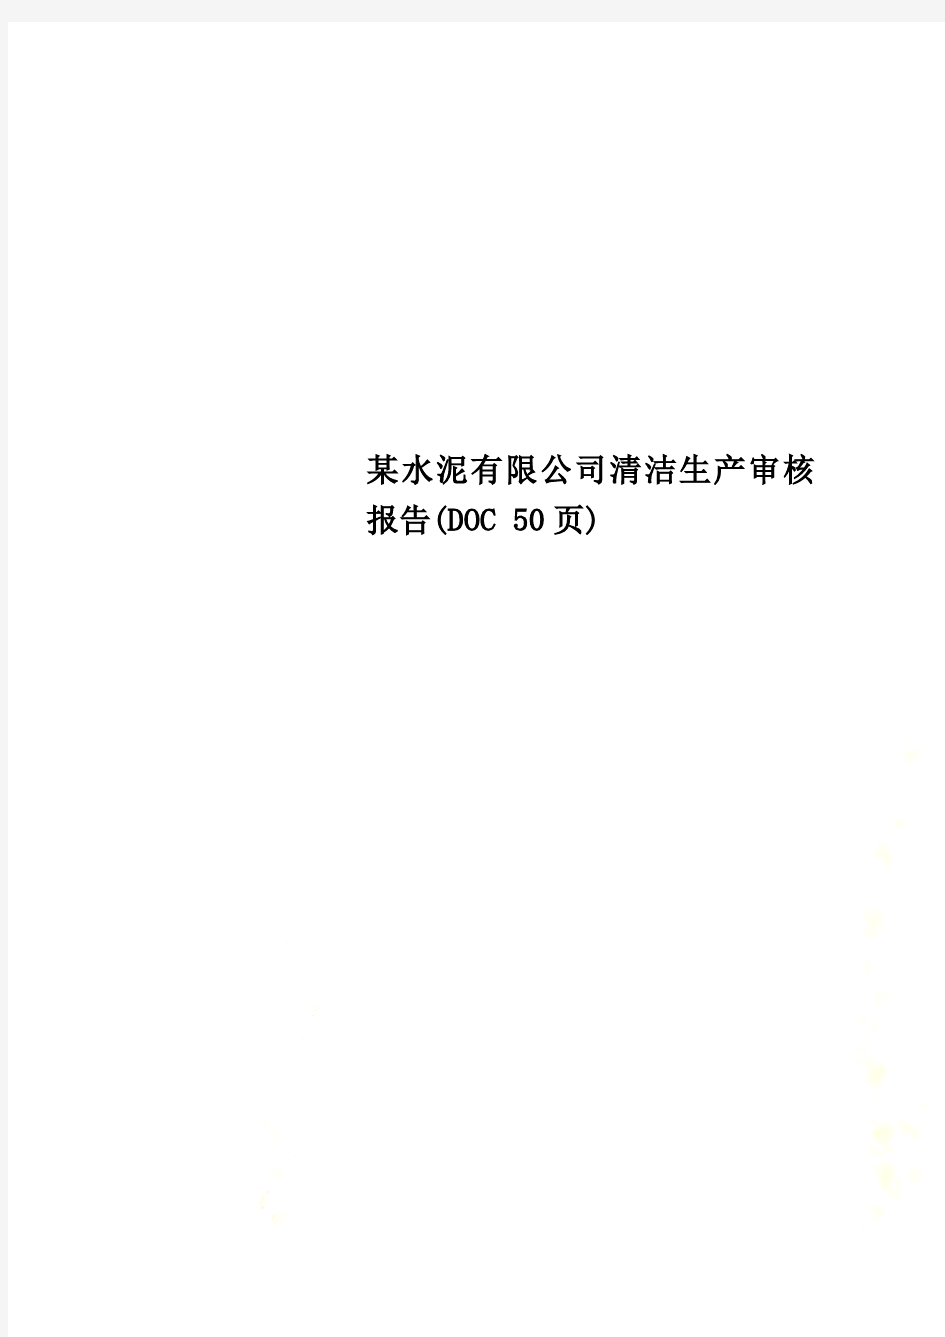 某水泥有限公司清洁生产审核报告(DOC 50页)